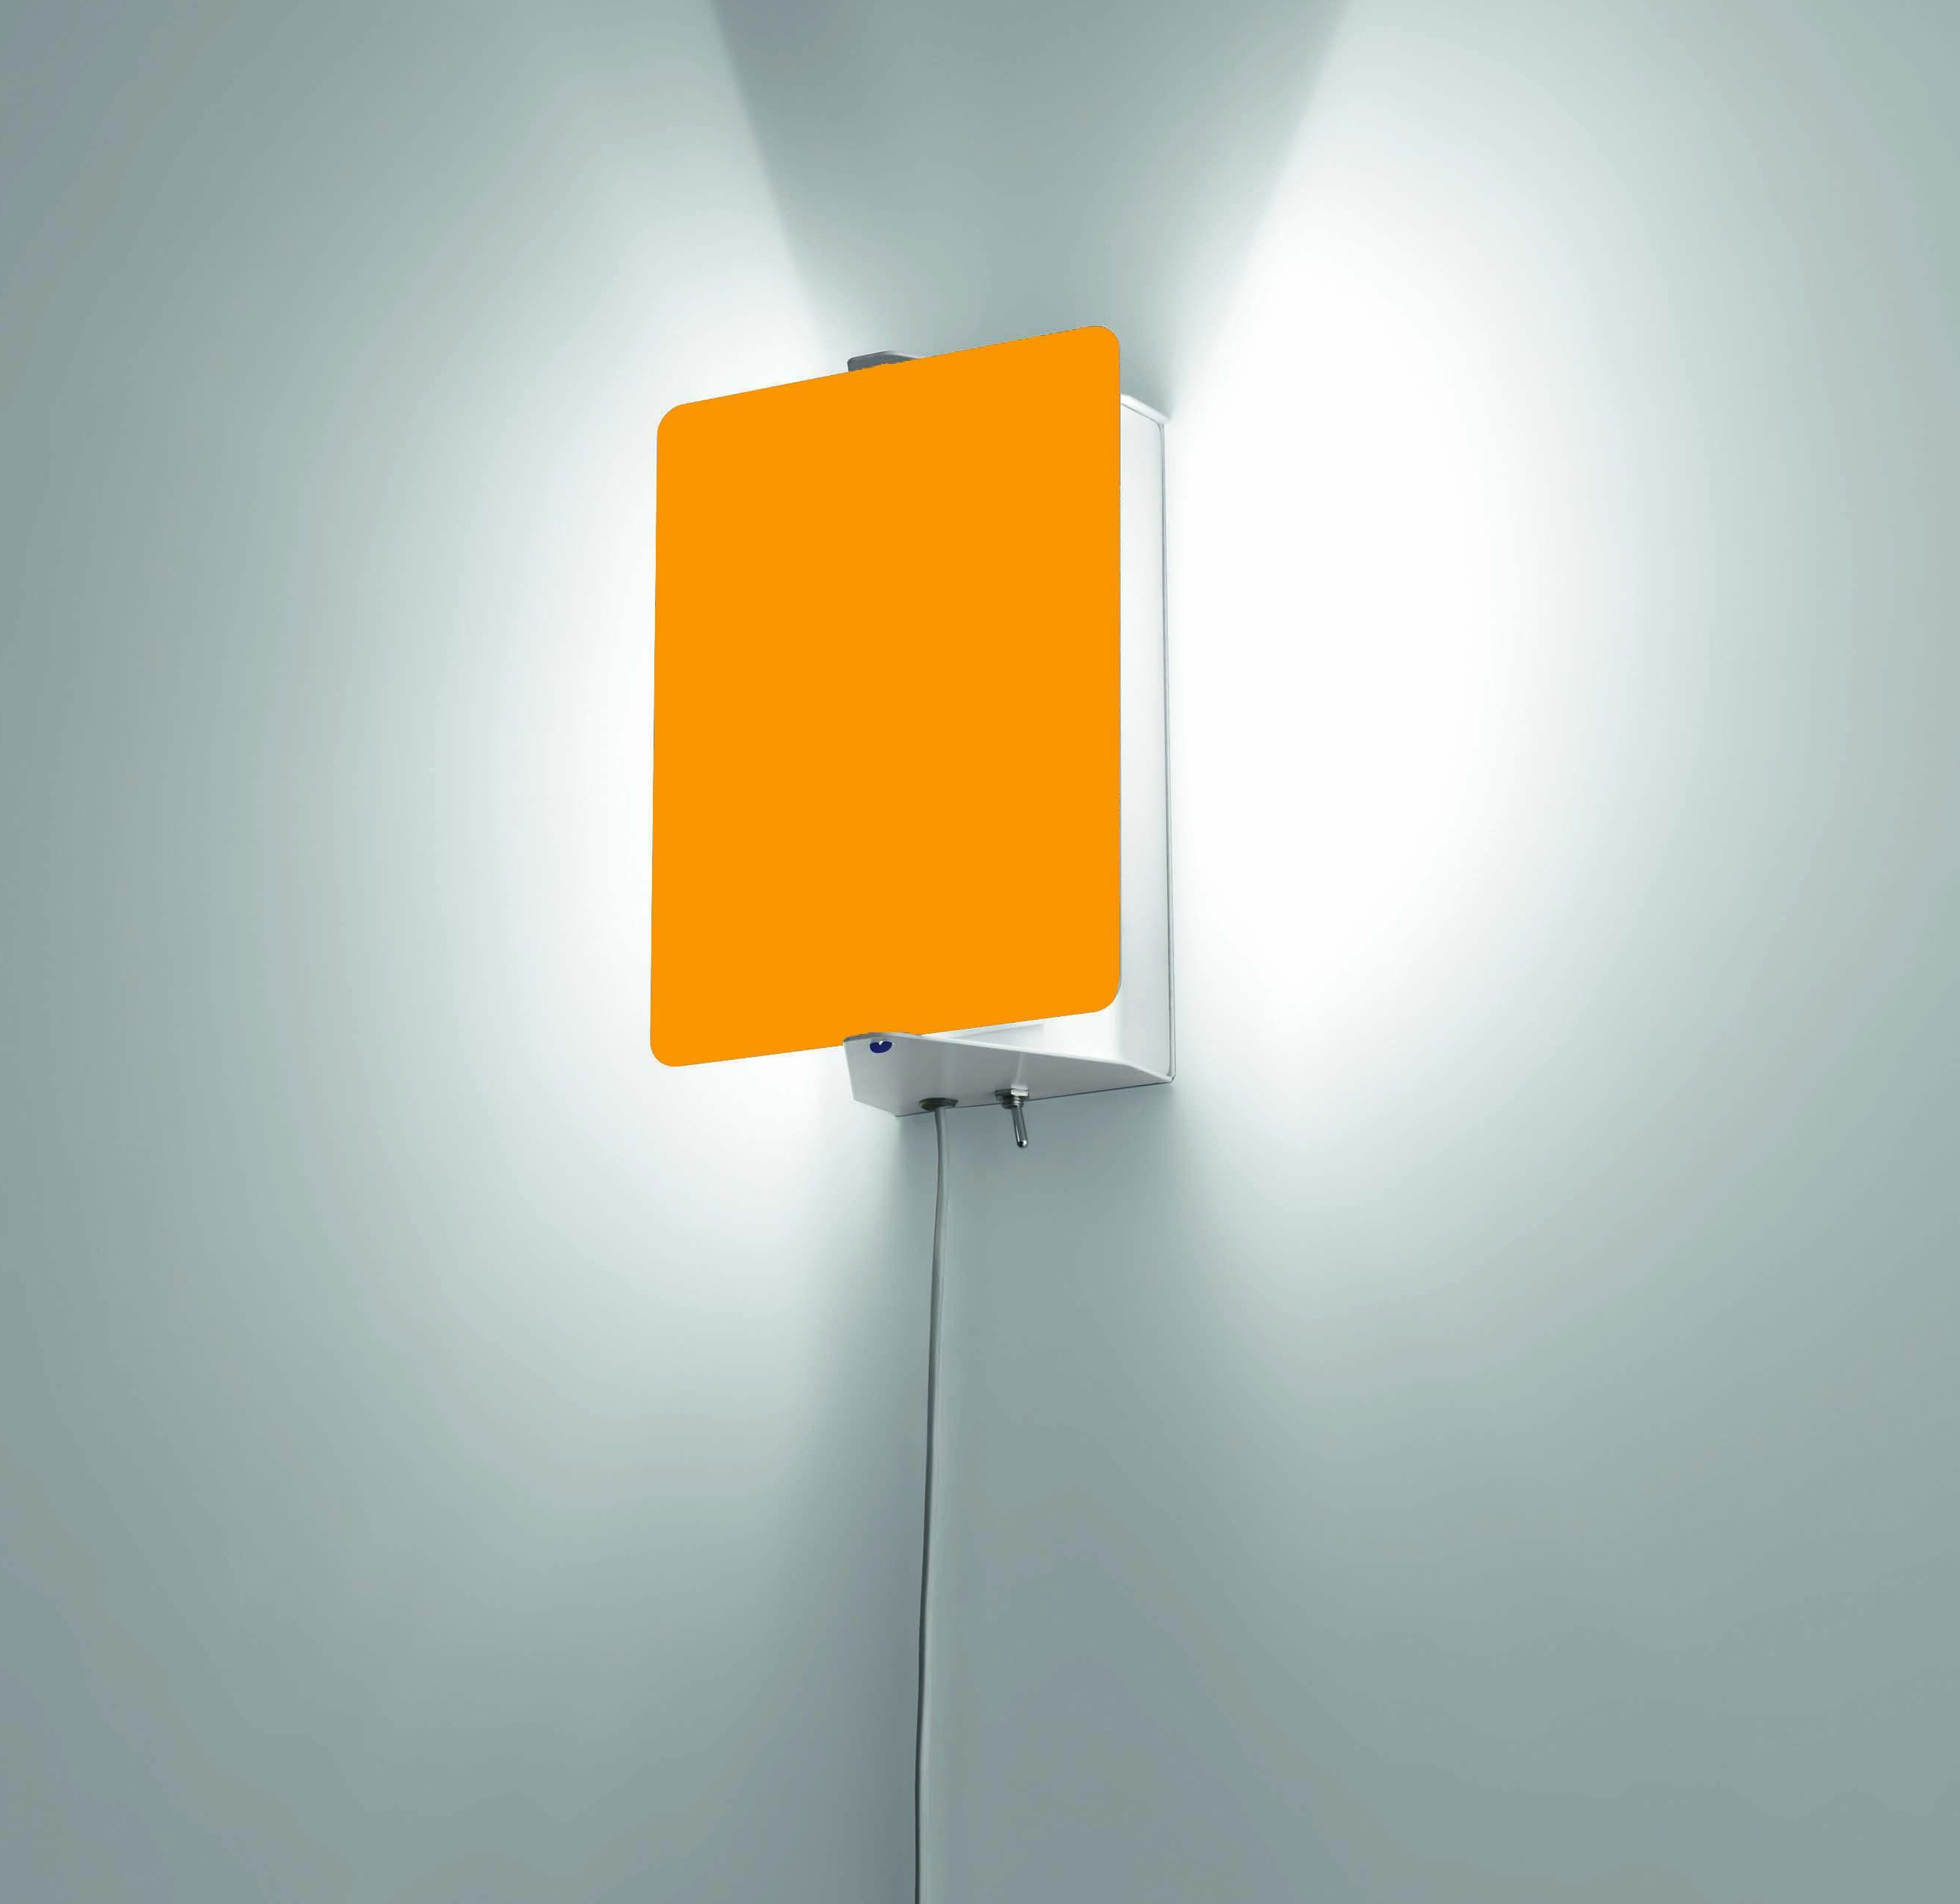 (6월특가) 네모 피보텅 벽조명 Nemo Applique A Volet Pivotant Wall Lamp (관부가세 포함)